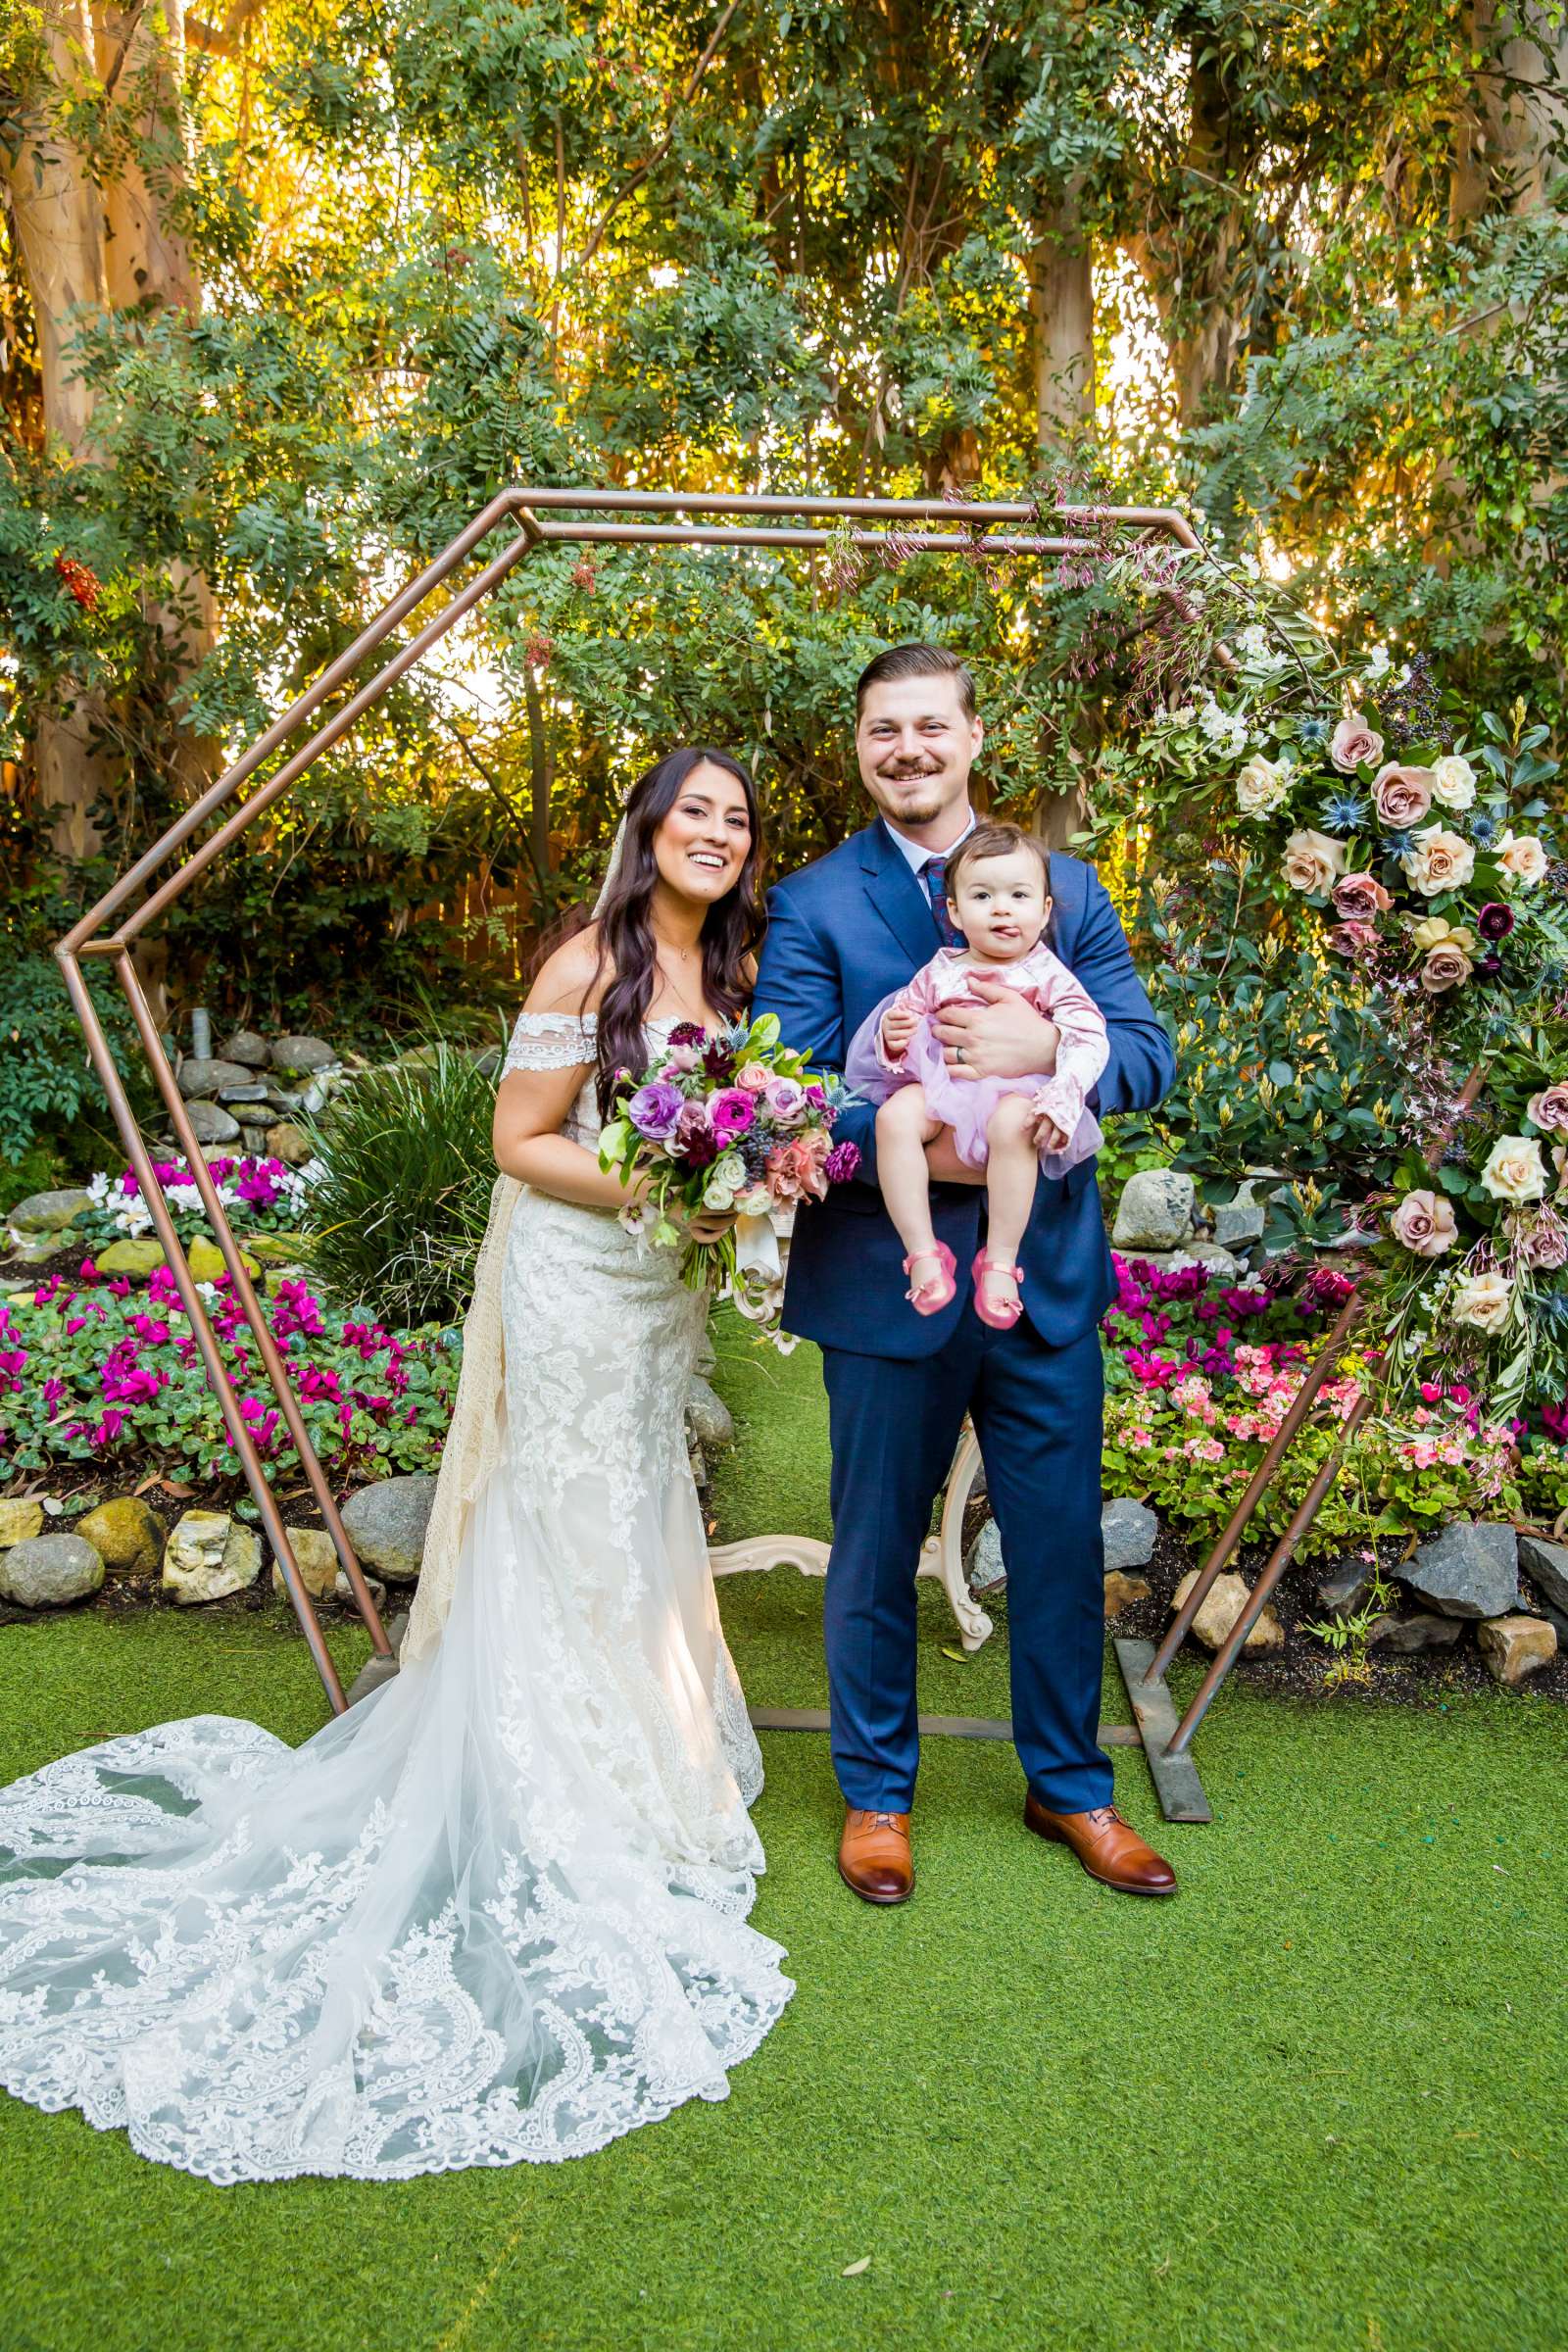 Twin Oaks House & Gardens Wedding Estate Wedding, Stephanie and Ilija Wedding Photo #18 by True Photography